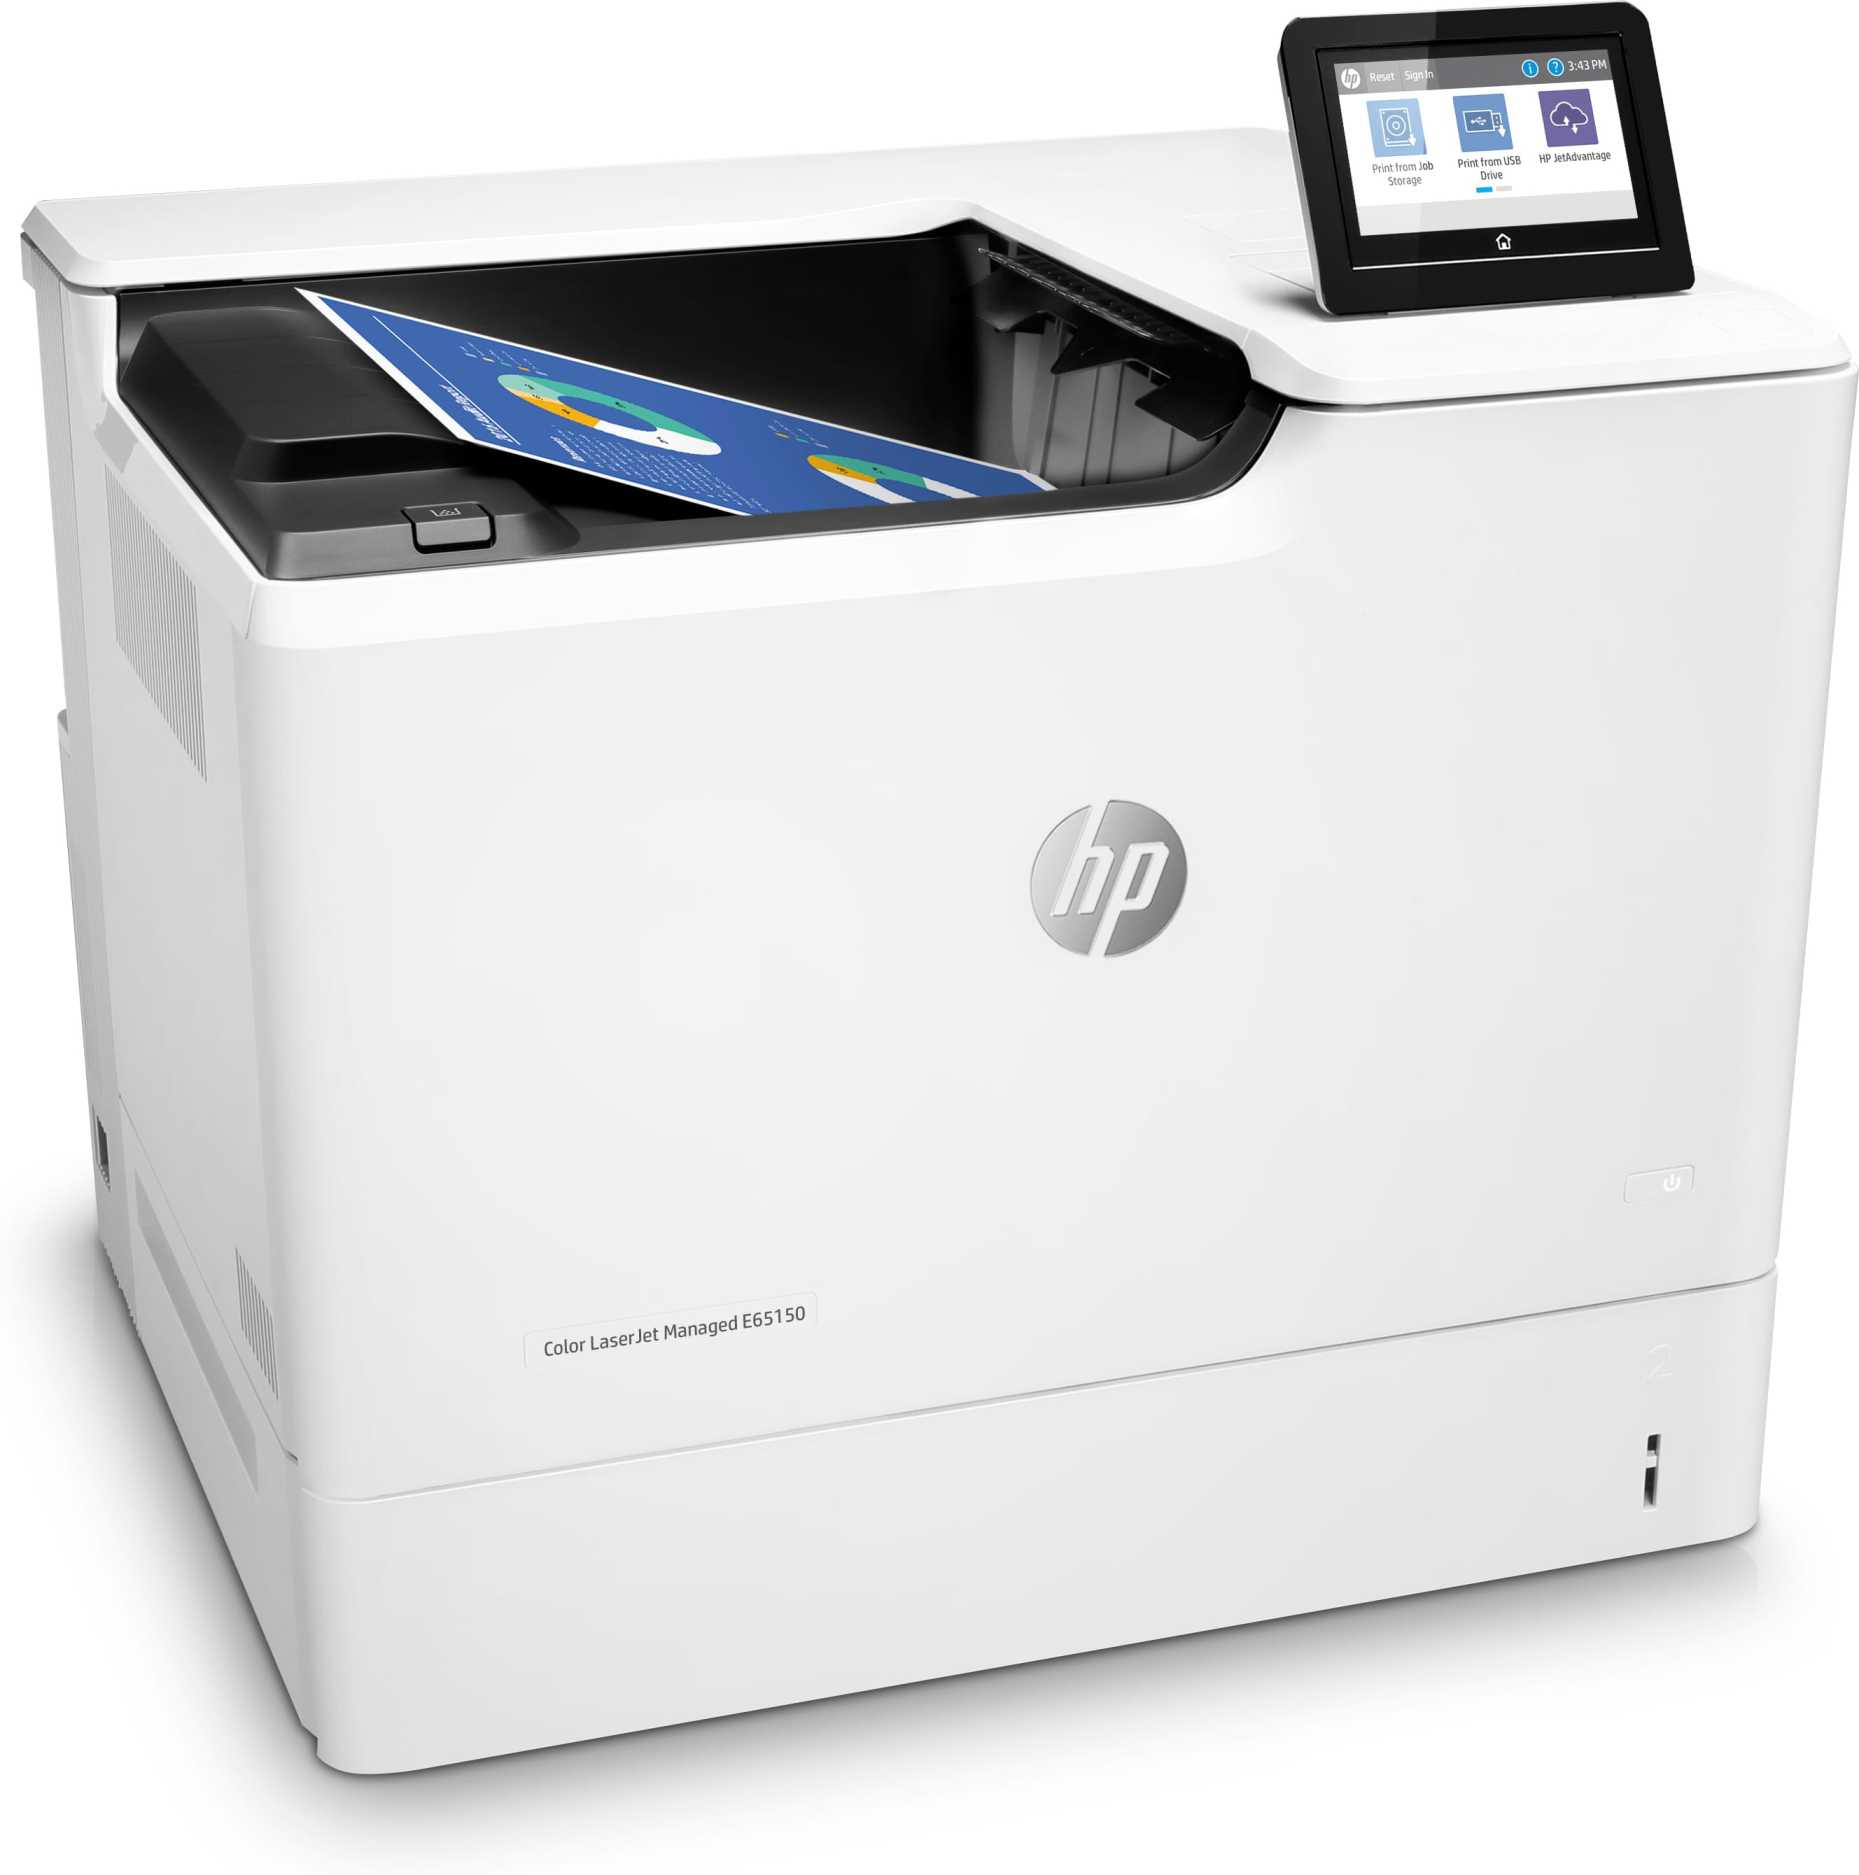 Impresora HP LaserJet Managed Color E65150DN